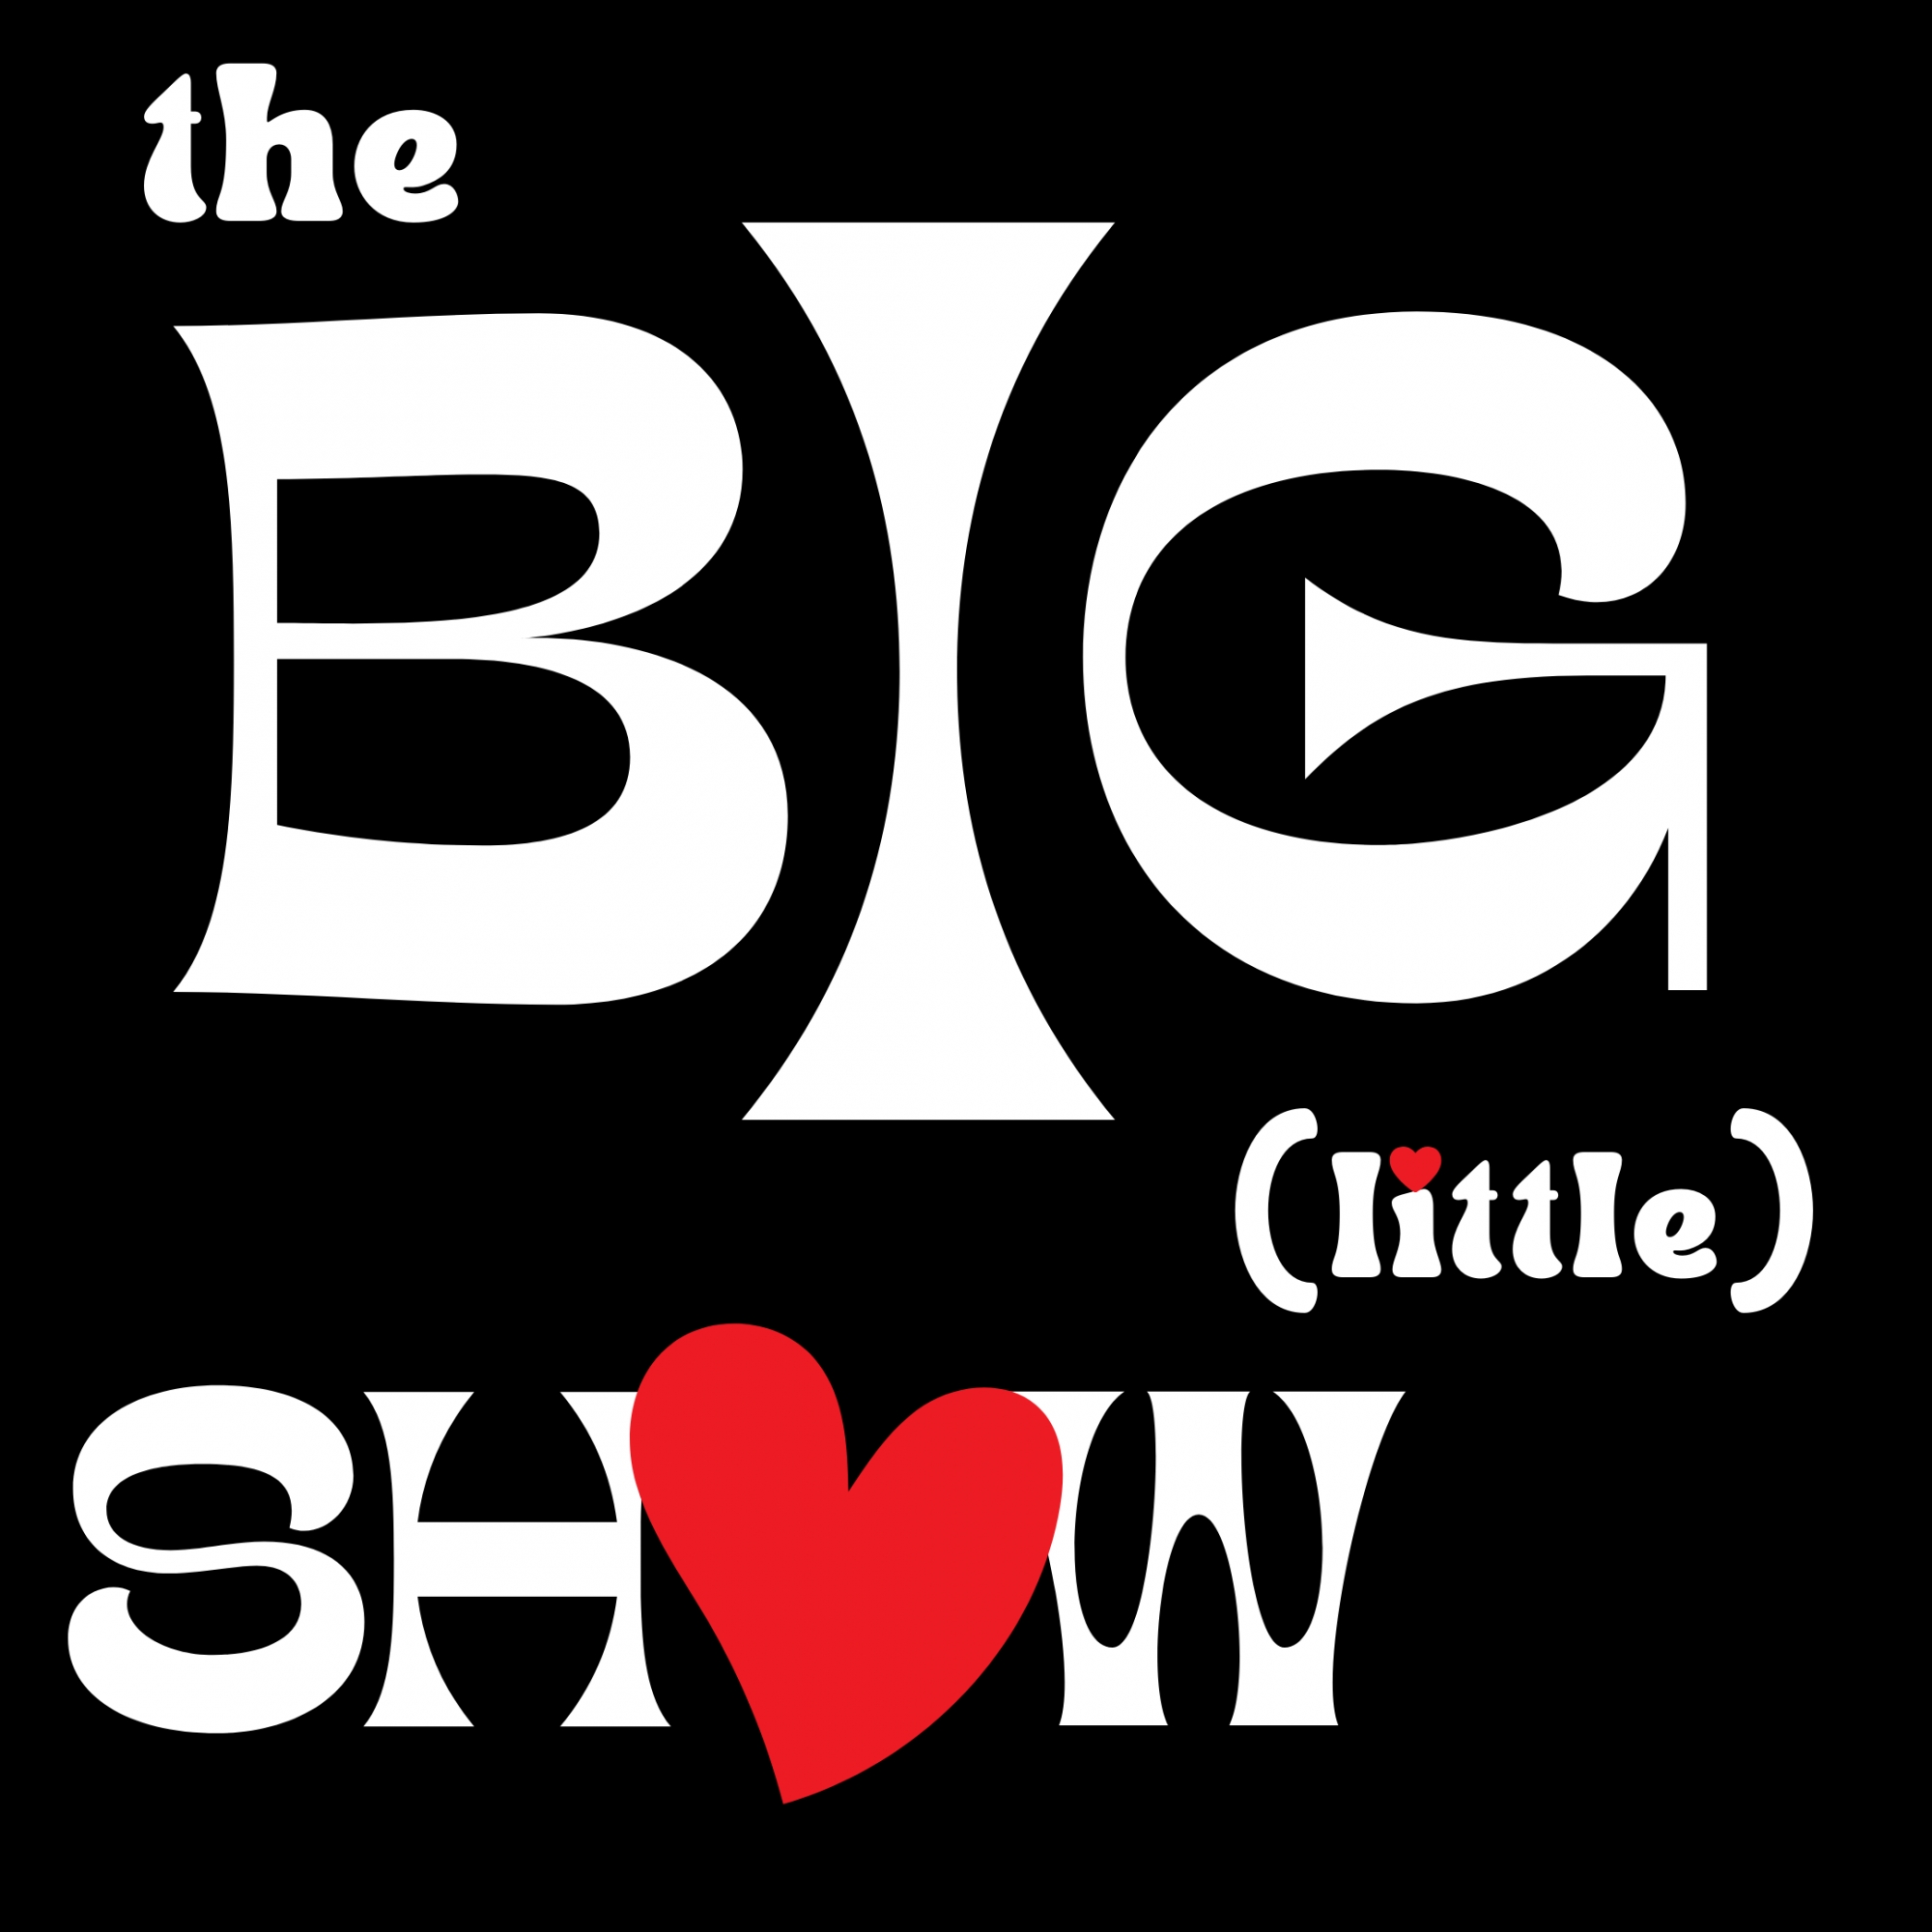 Dec '22 The Big (little) Show - Show 9